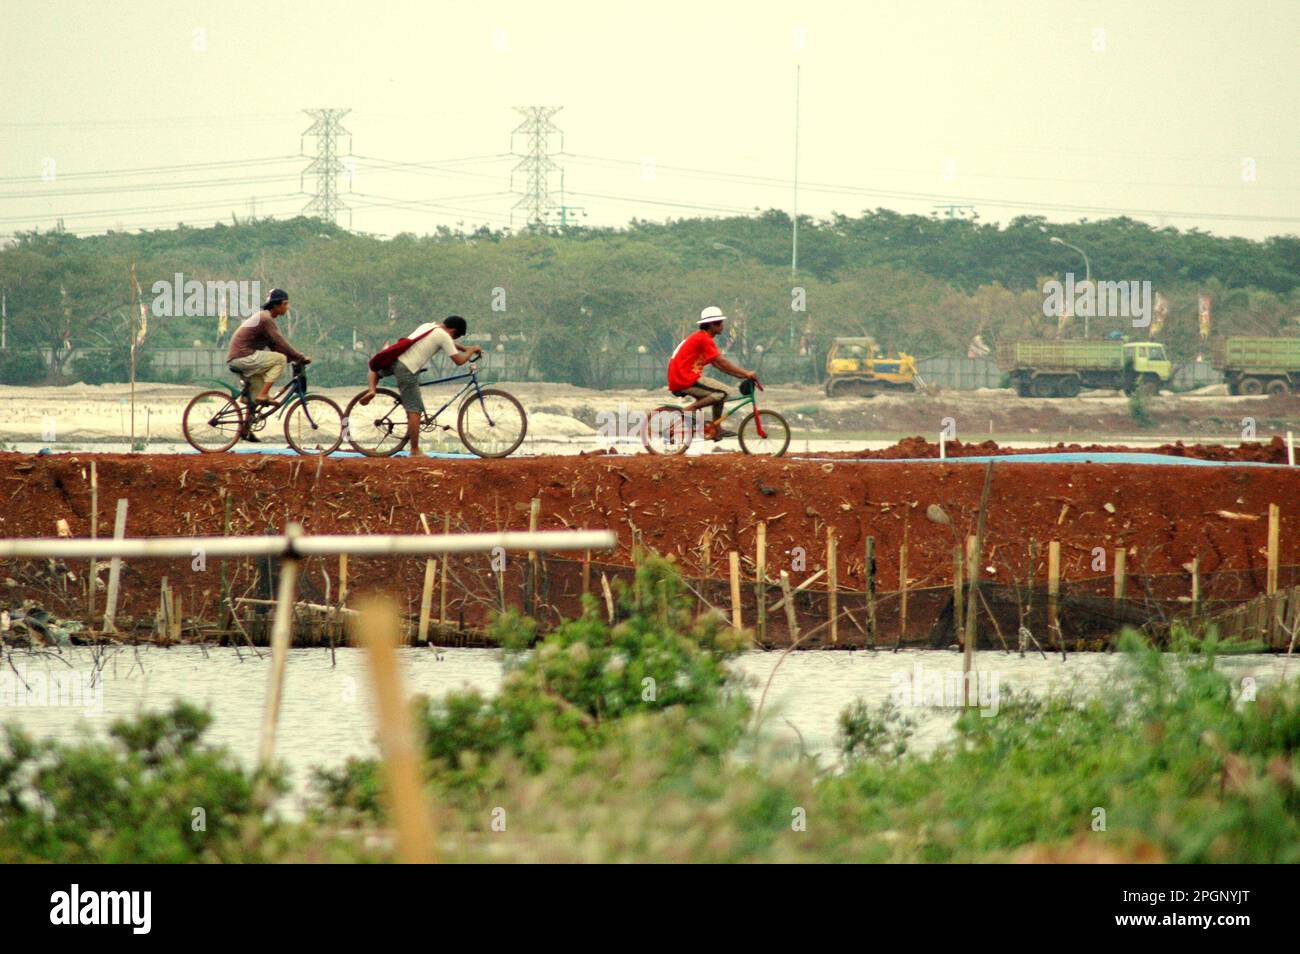 Les cyclistes traversent une digue dans une zone côtière touchée par le développement urbain de Jakarta, en Indonésie. Banque D'Images